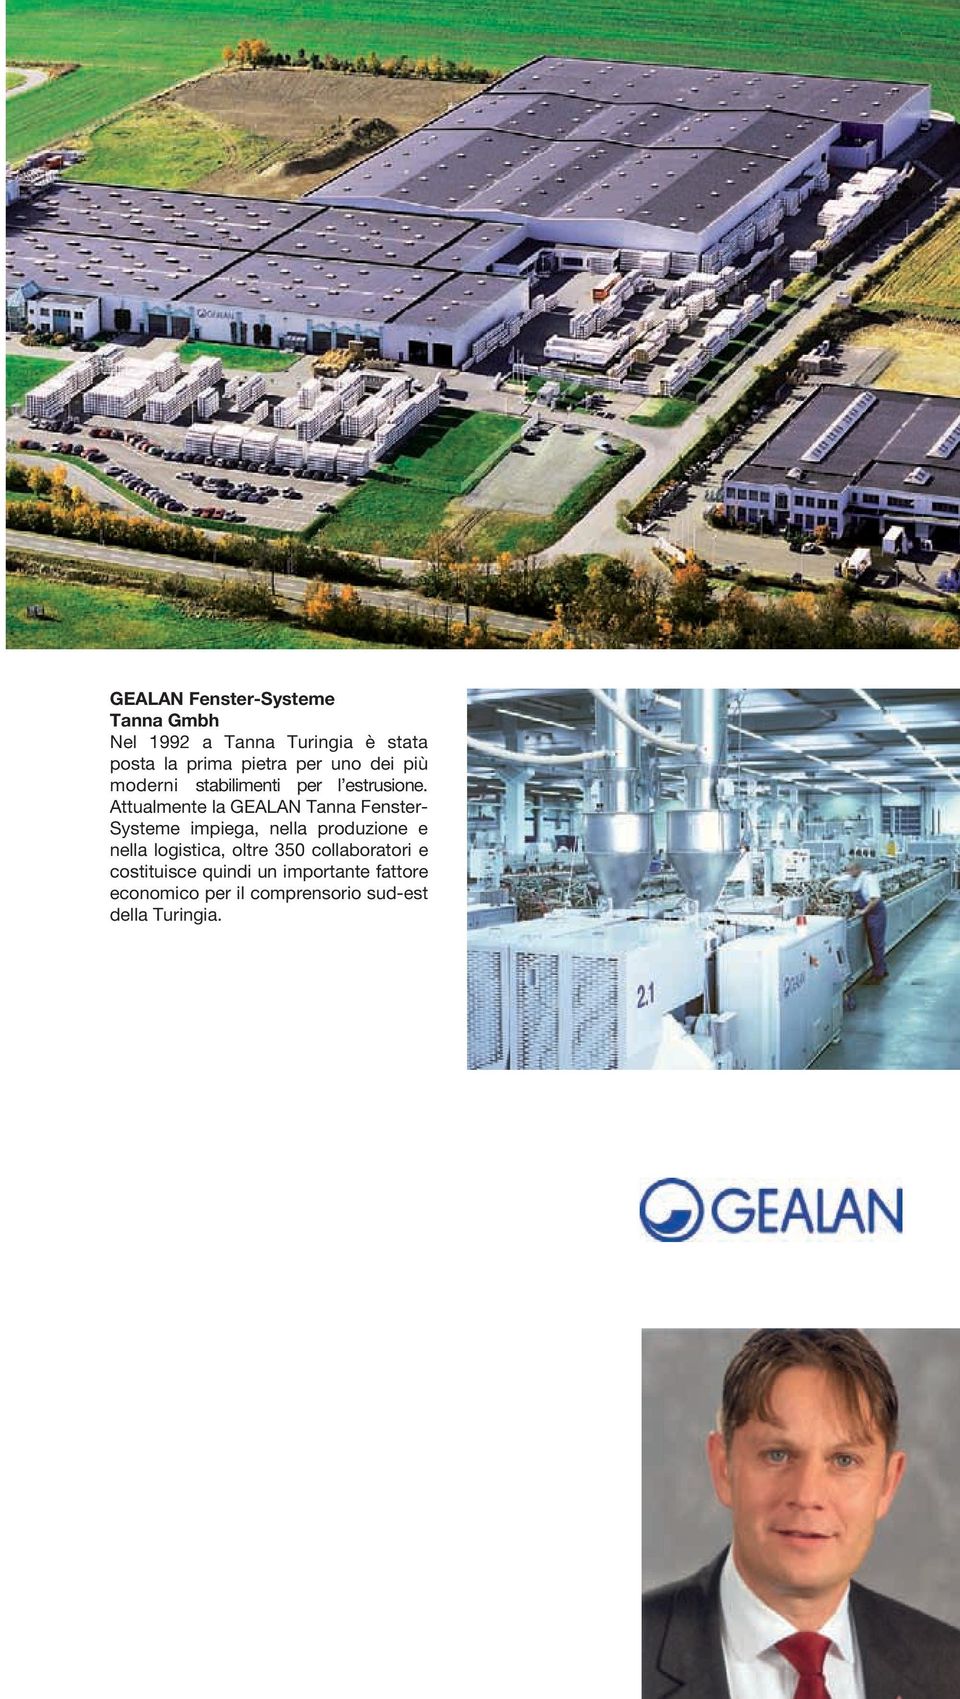 Attualmente la GEALAN Tanna Fenster- Systeme impiega, nella produzione e nella